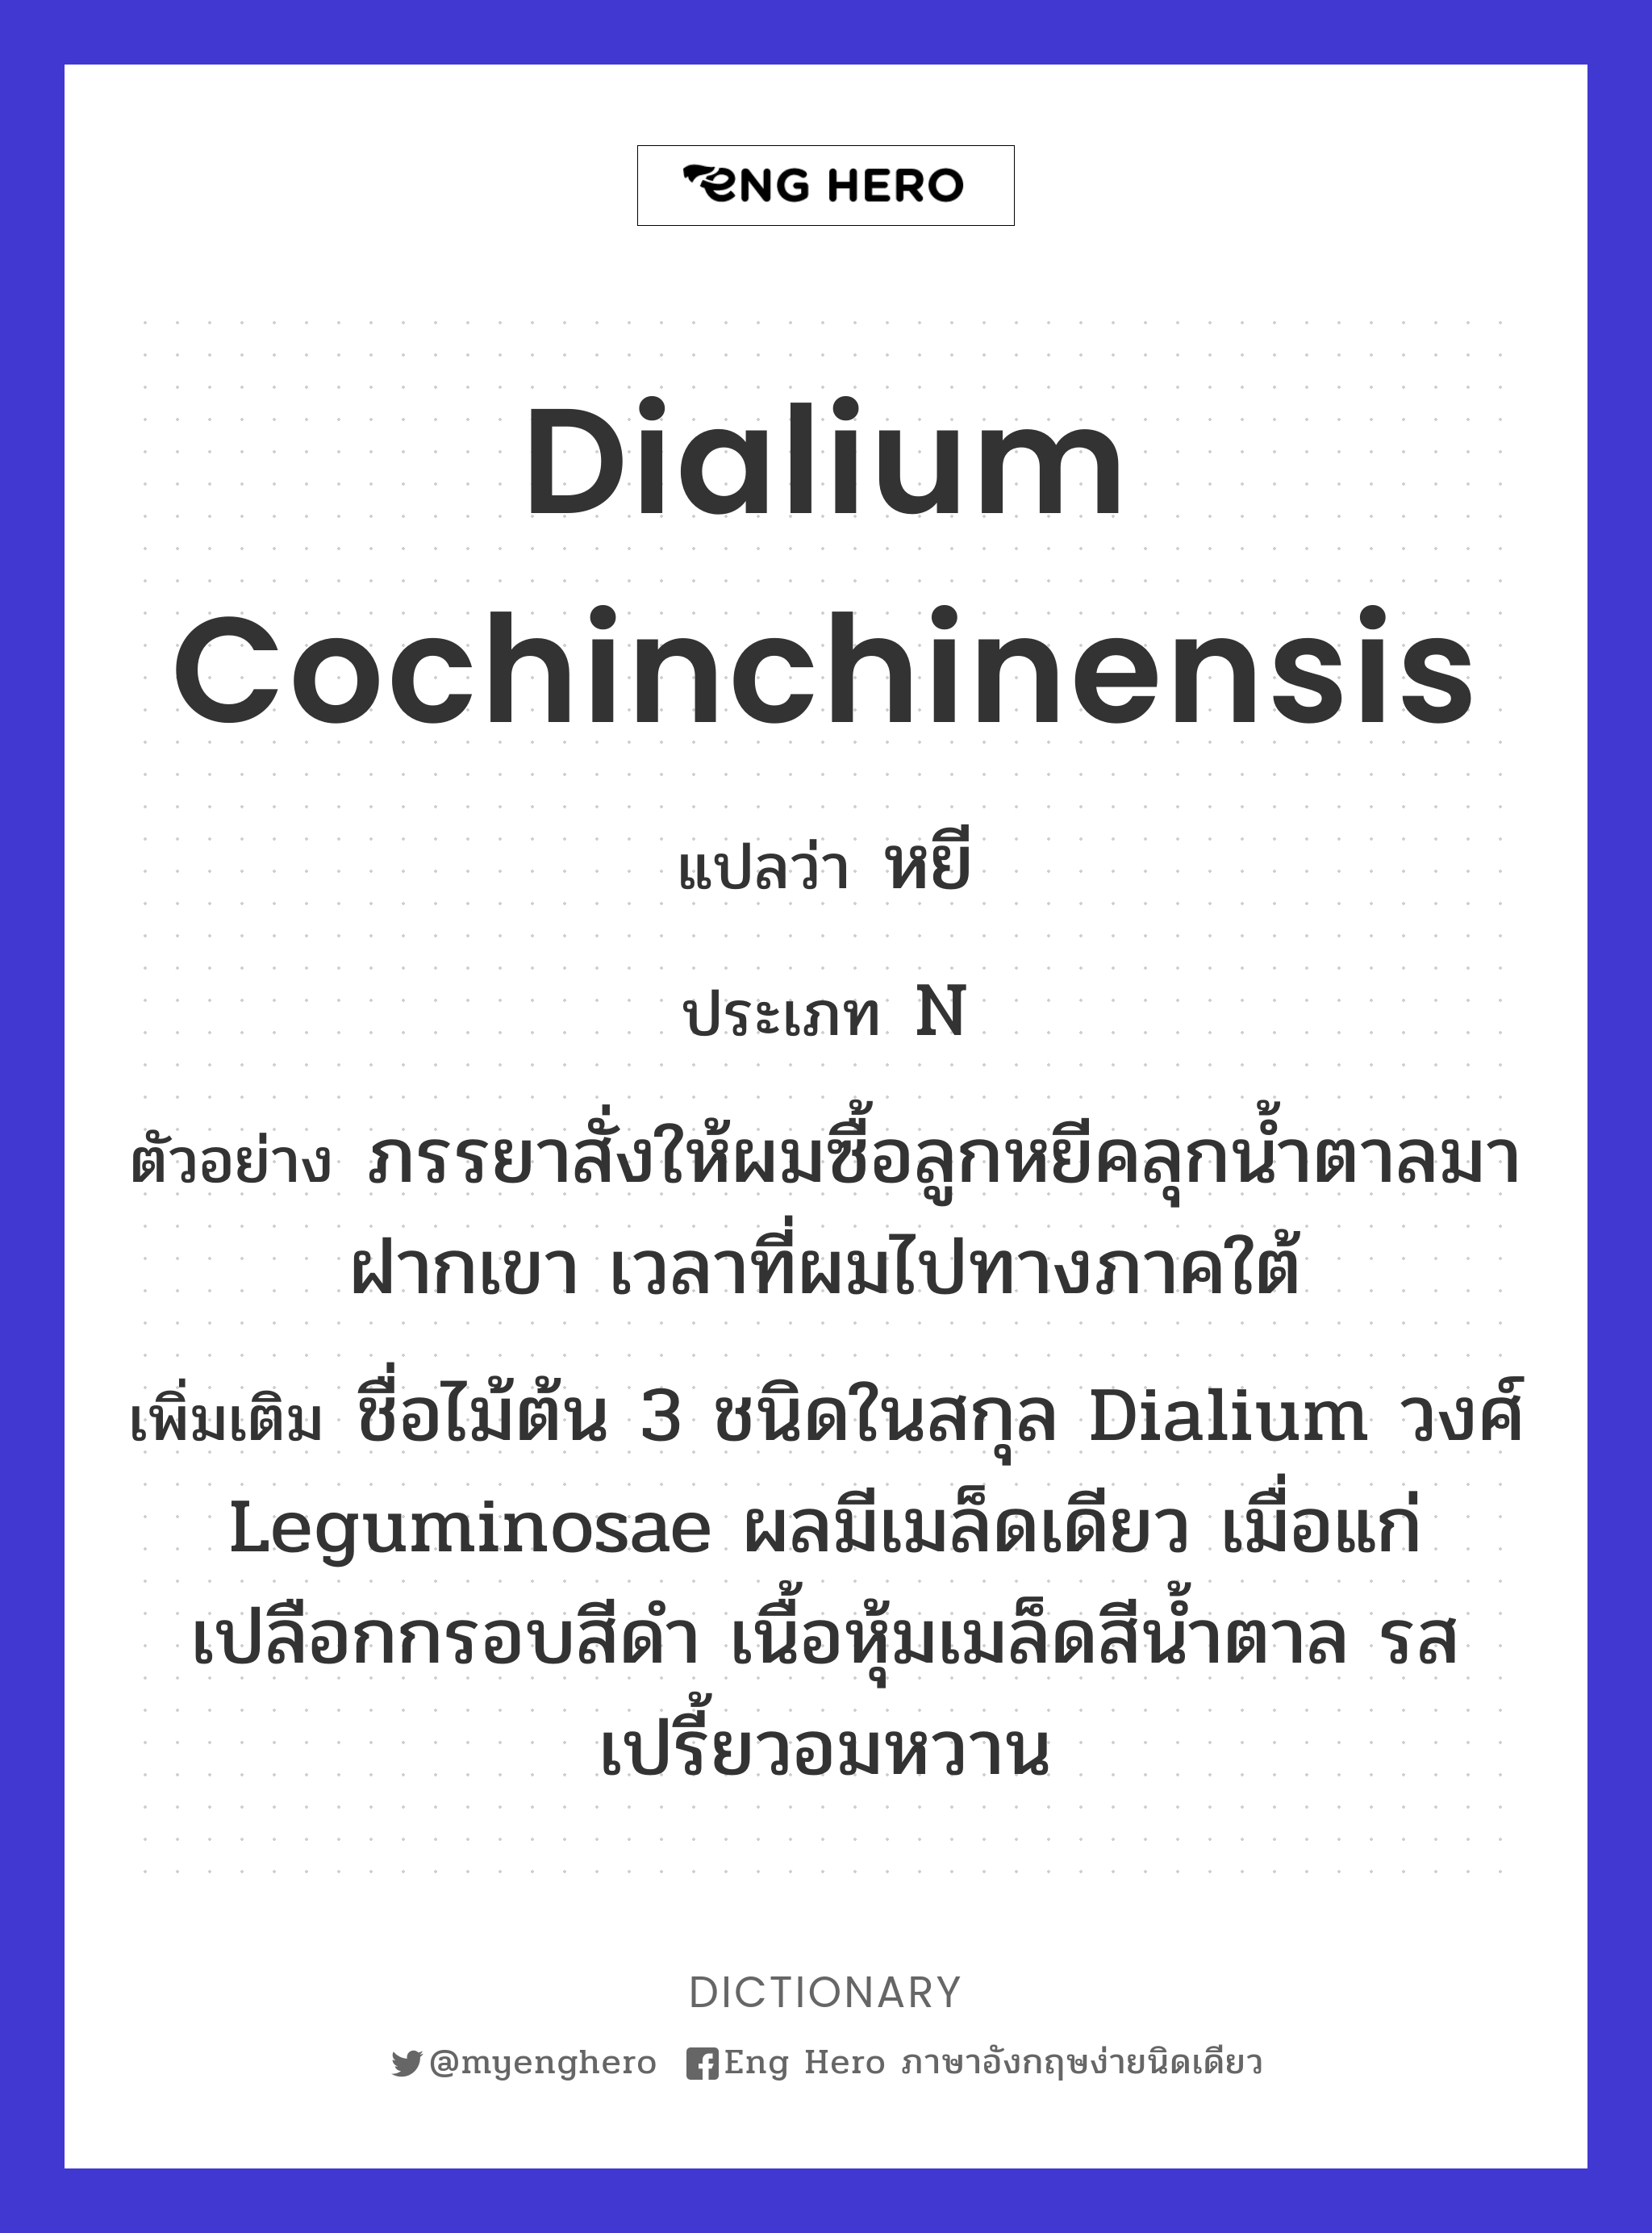 Dialium cochinchinensis